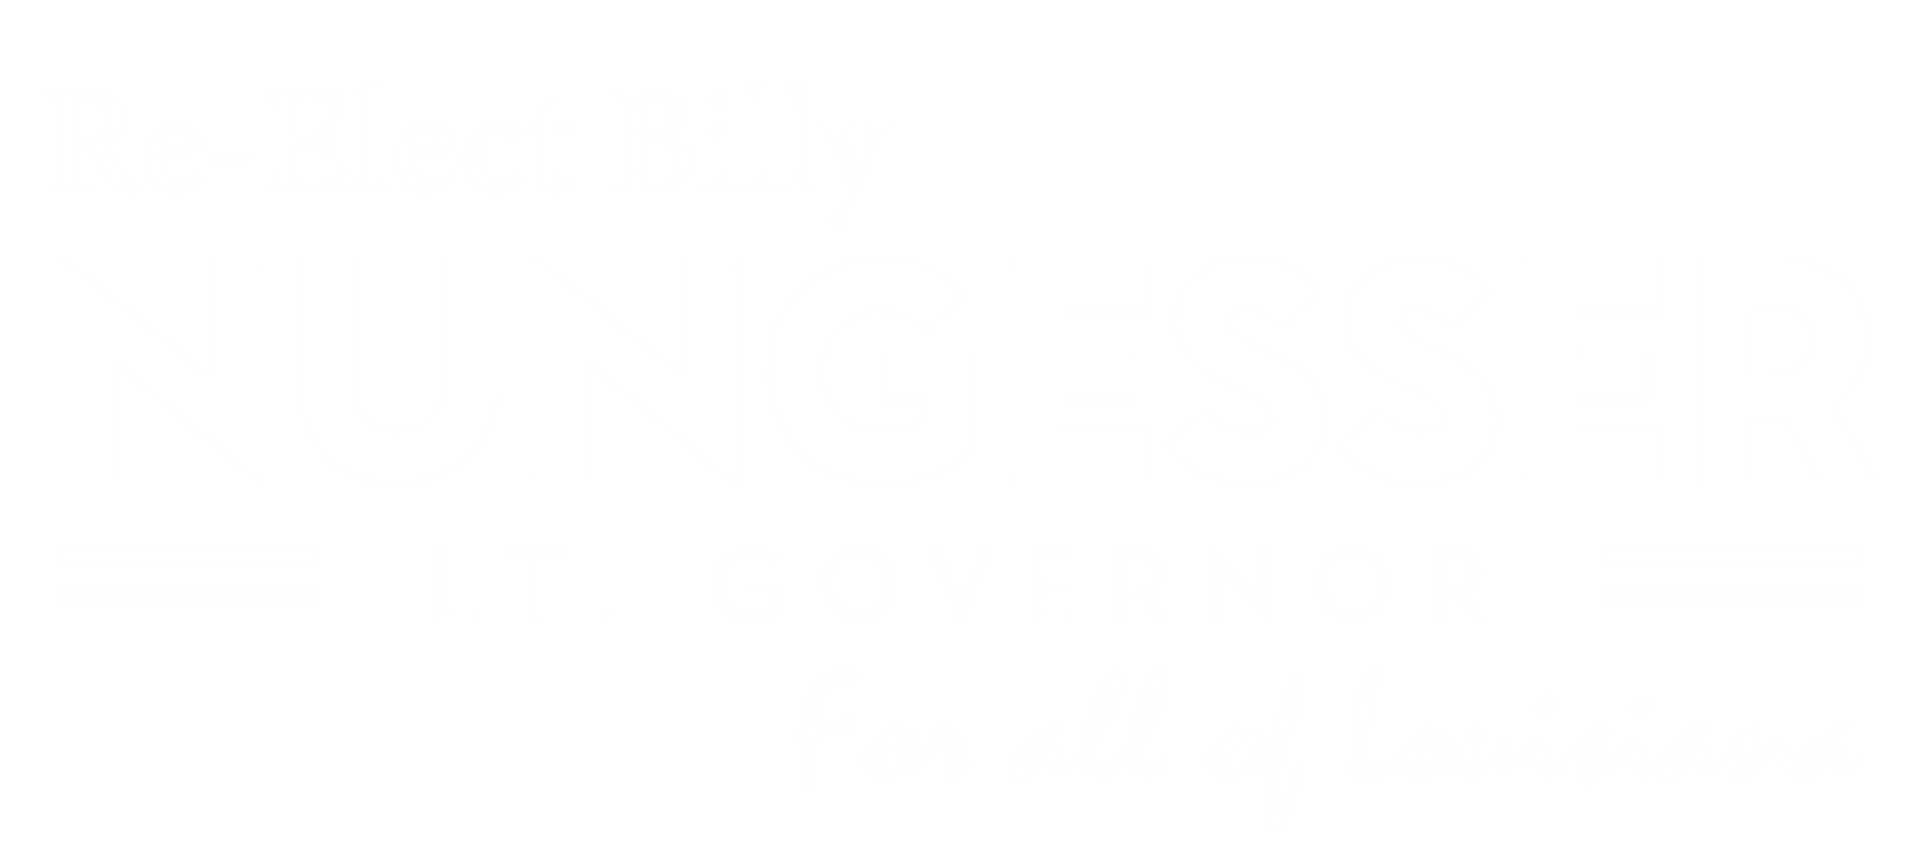 Re-Elect Billy Nungesser Lt. Governor